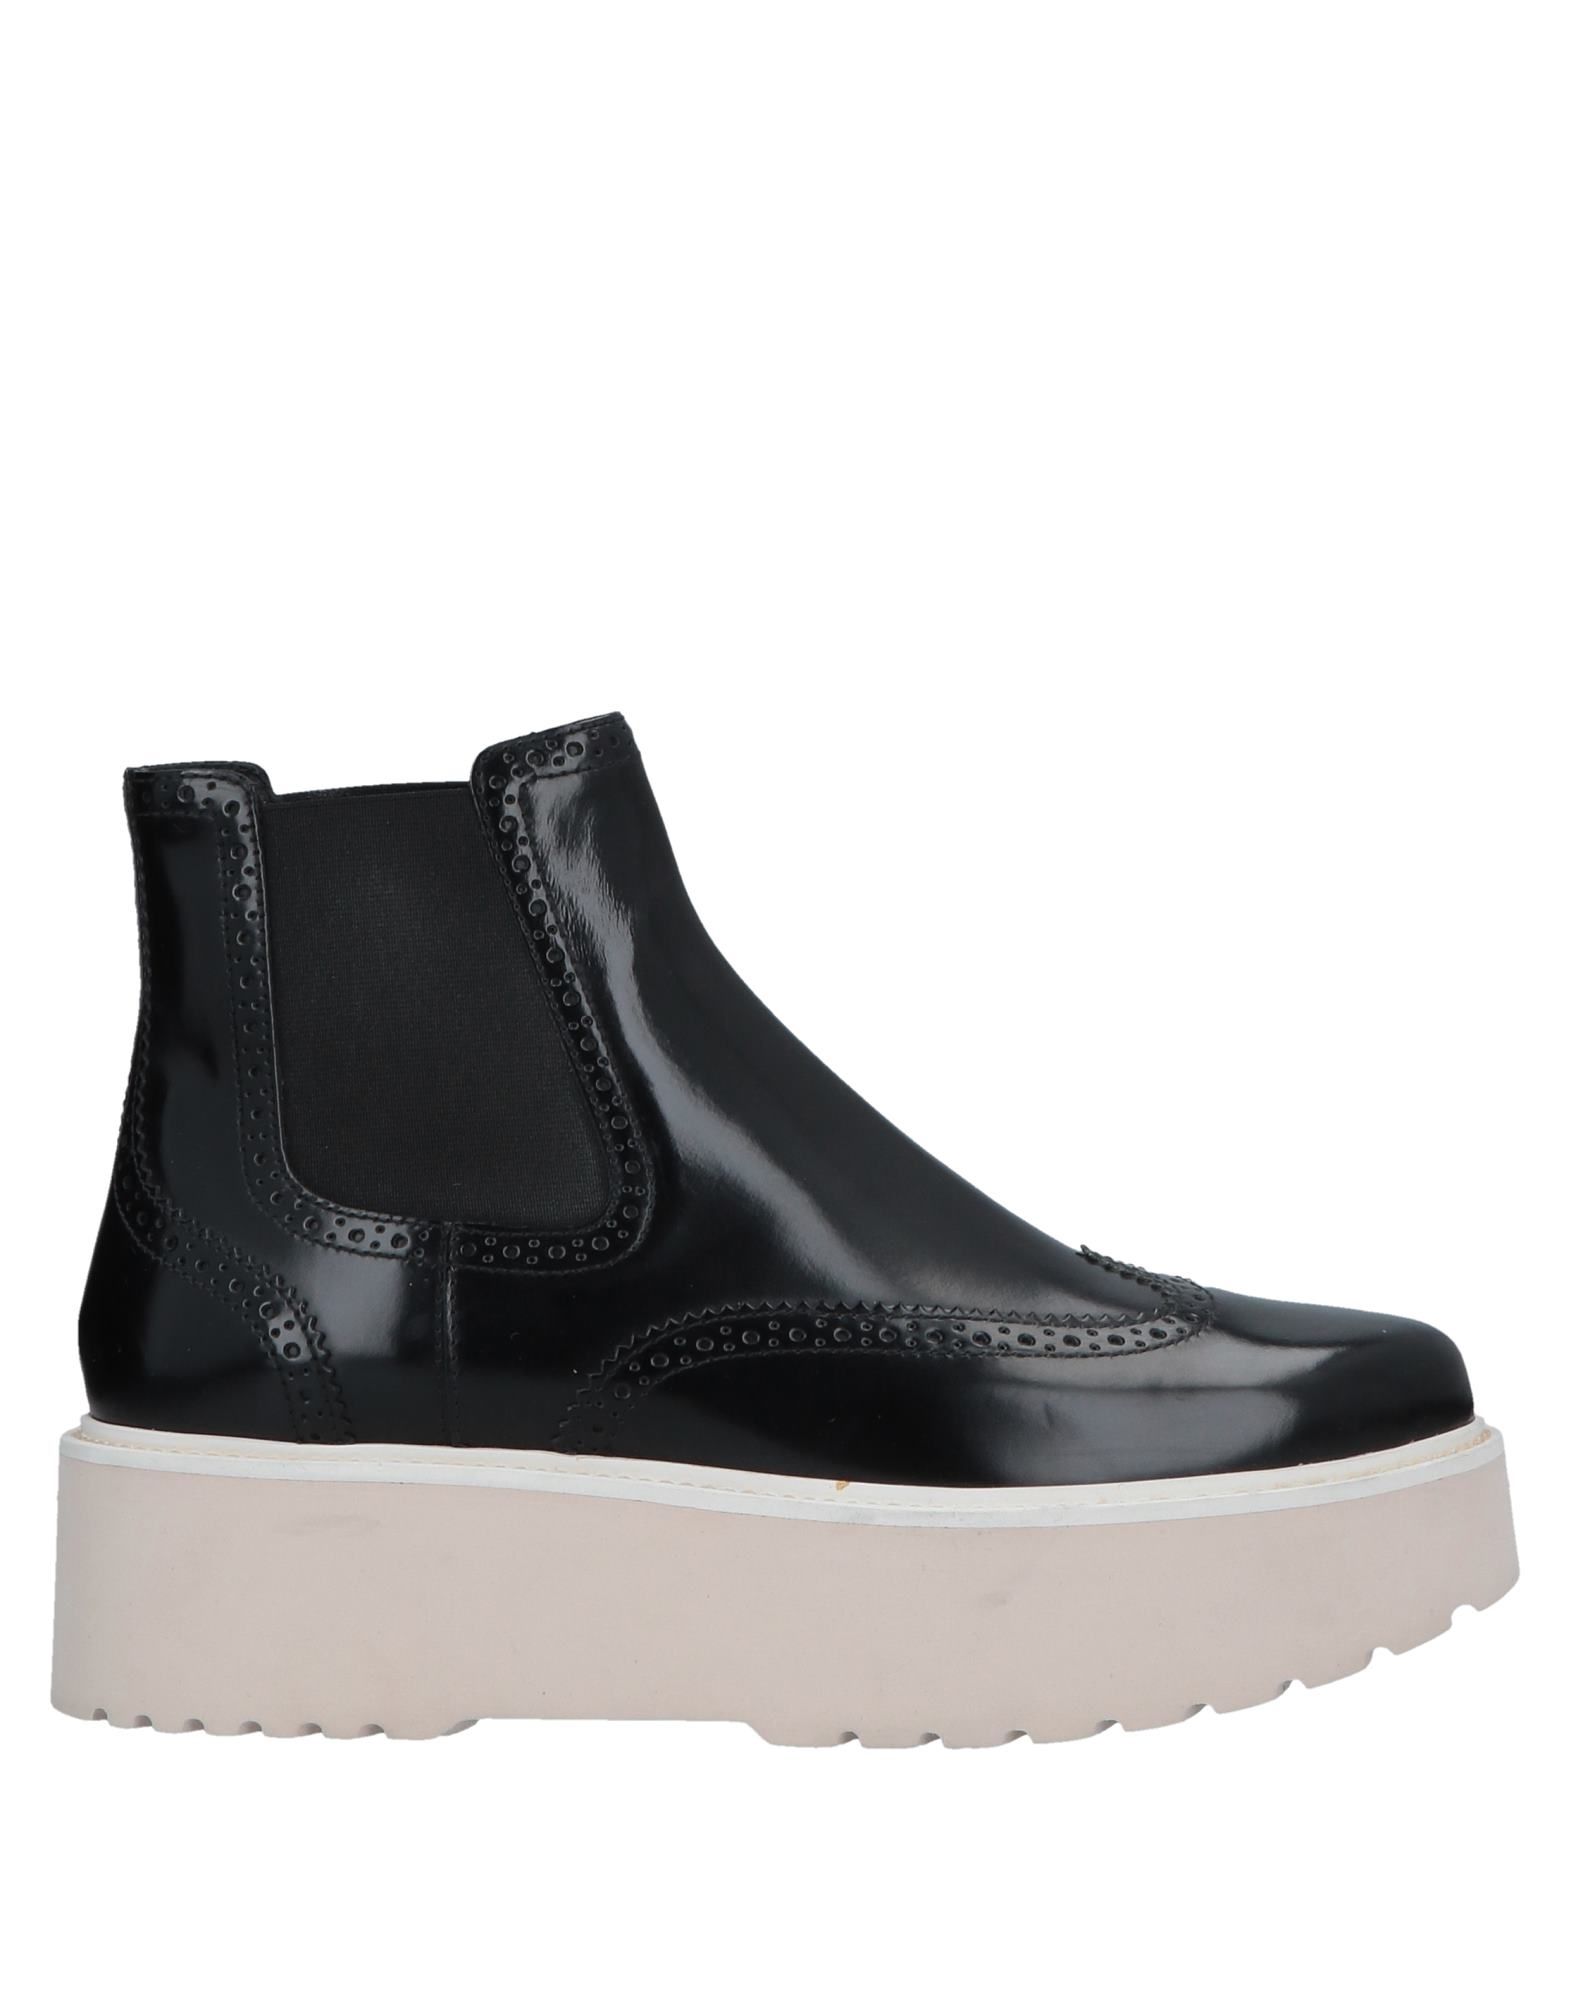 Shop Hogan Woman Ankle Boots Black Size 7.5 Soft Leather